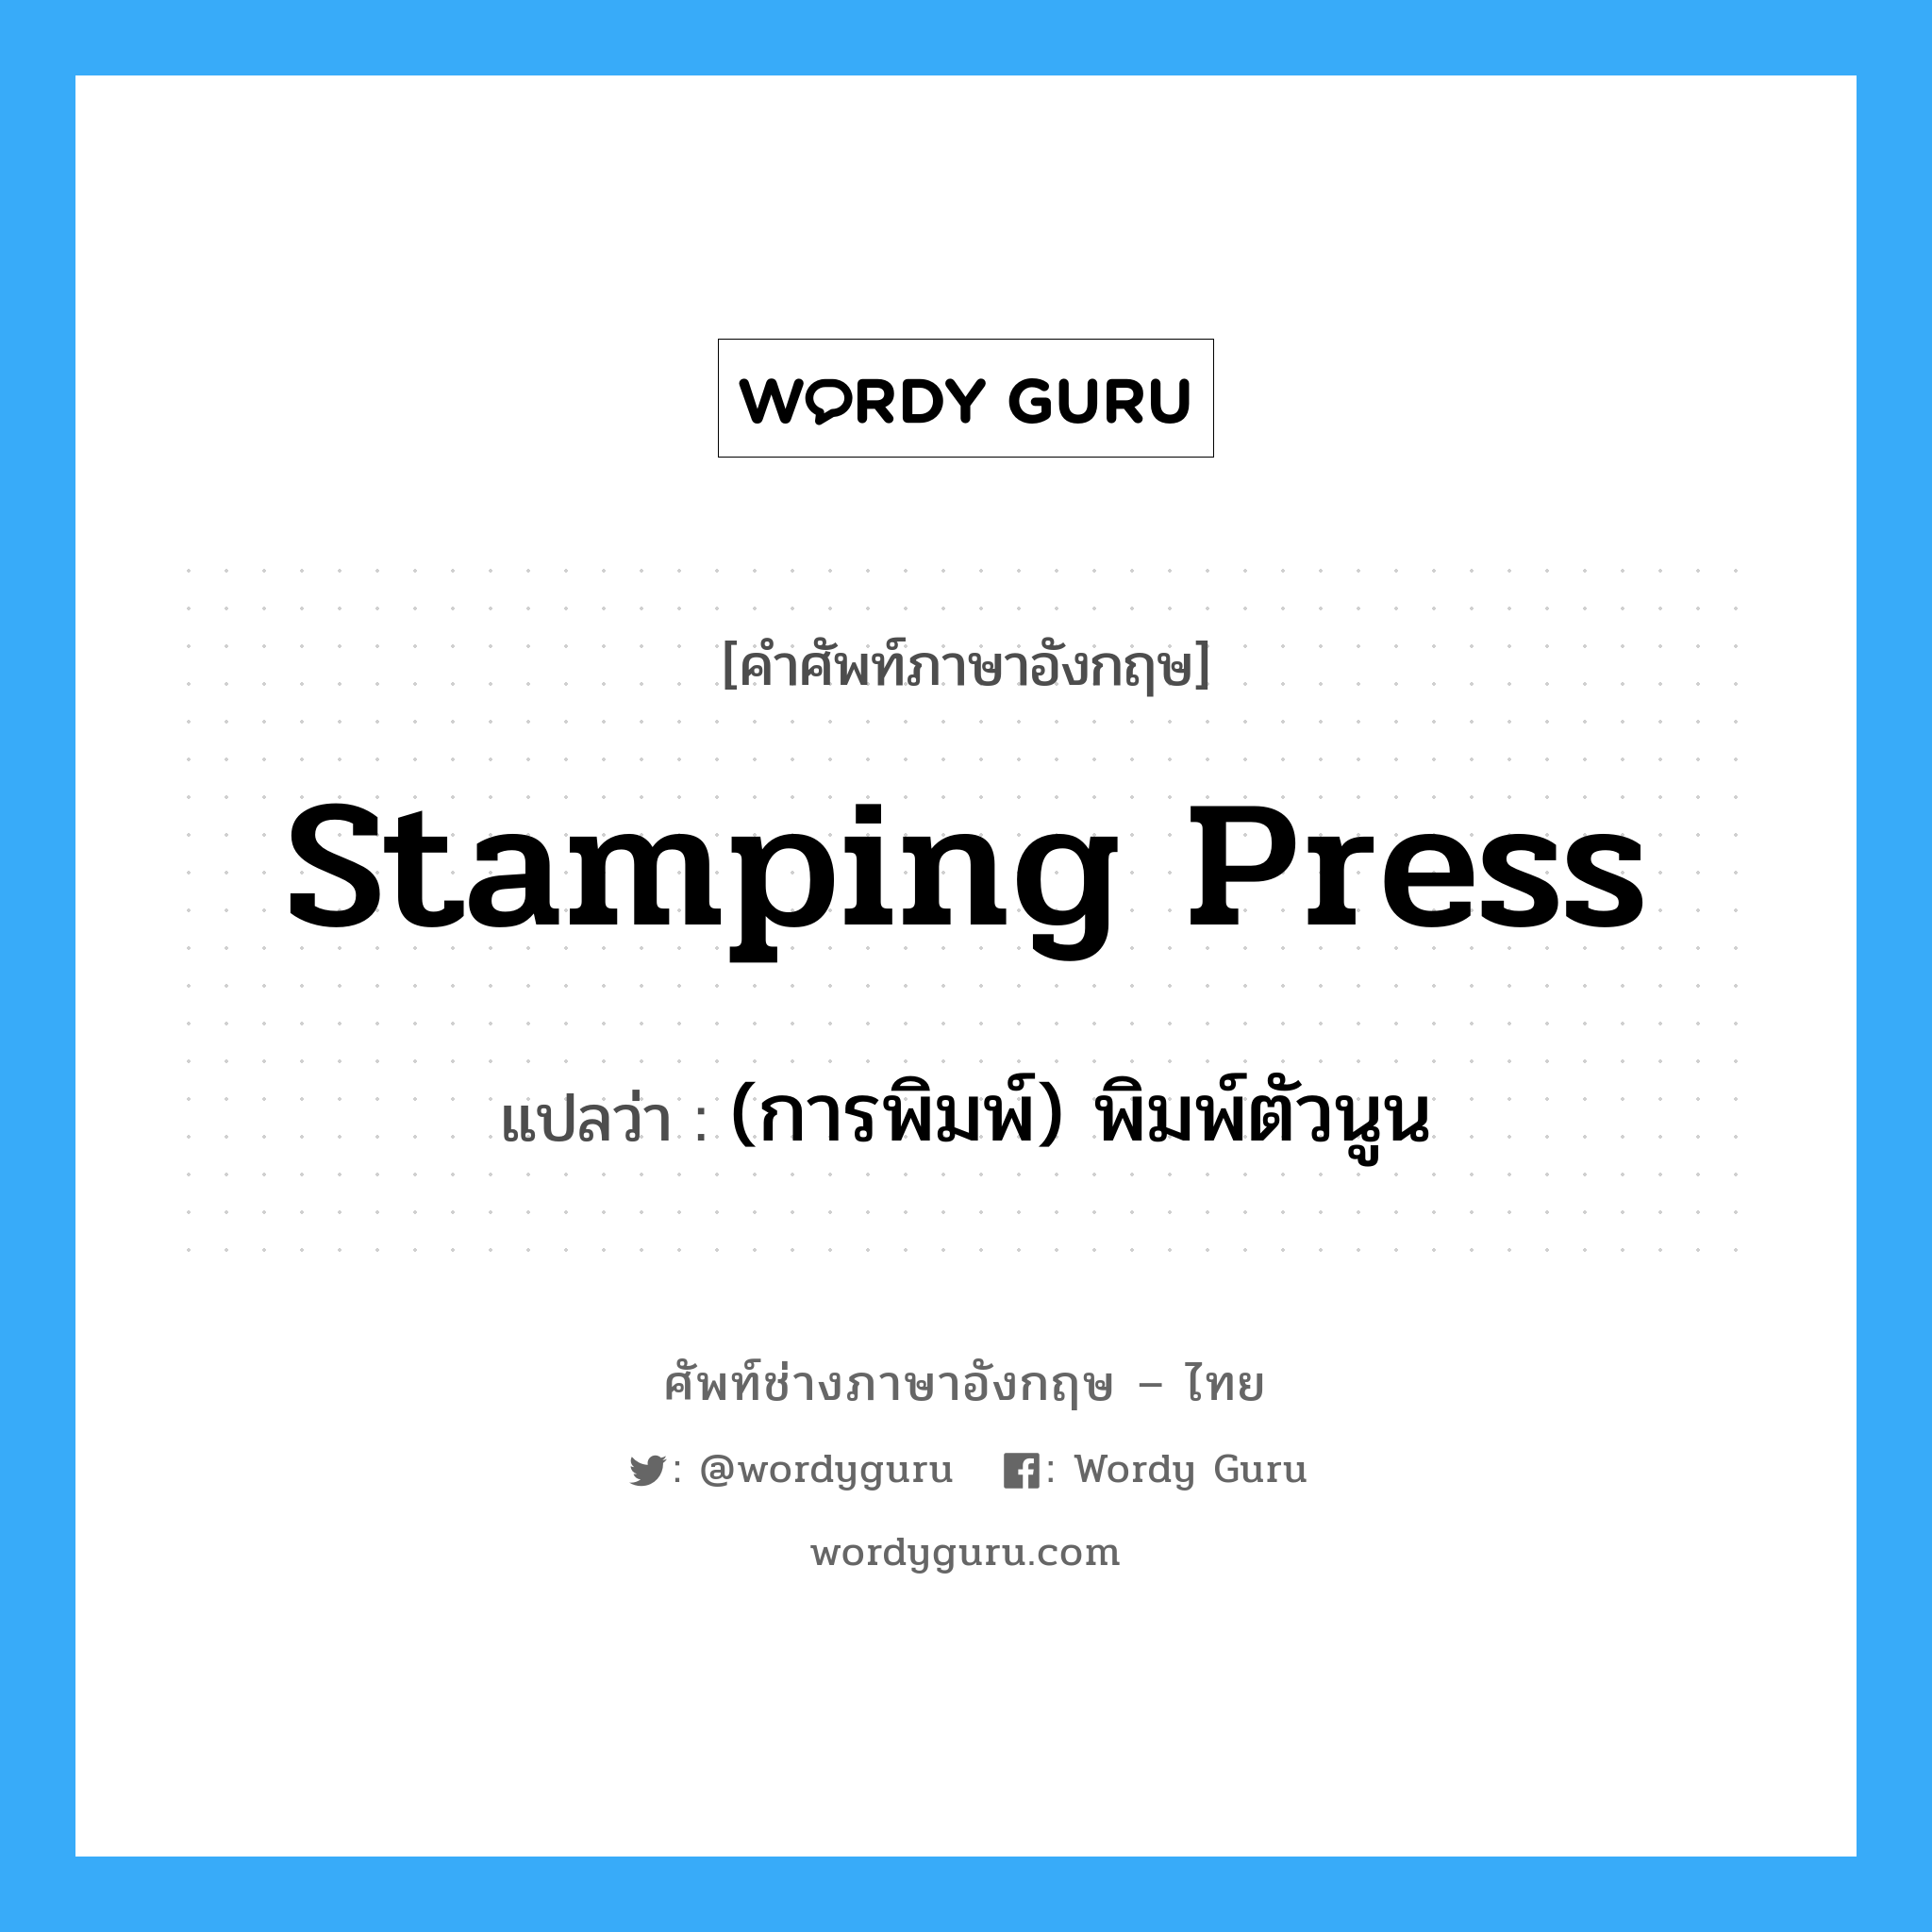 (การพิมพ์) พิมพ์ตัวนูน ภาษาอังกฤษ?, คำศัพท์ช่างภาษาอังกฤษ - ไทย (การพิมพ์) พิมพ์ตัวนูน คำศัพท์ภาษาอังกฤษ (การพิมพ์) พิมพ์ตัวนูน แปลว่า stamping press